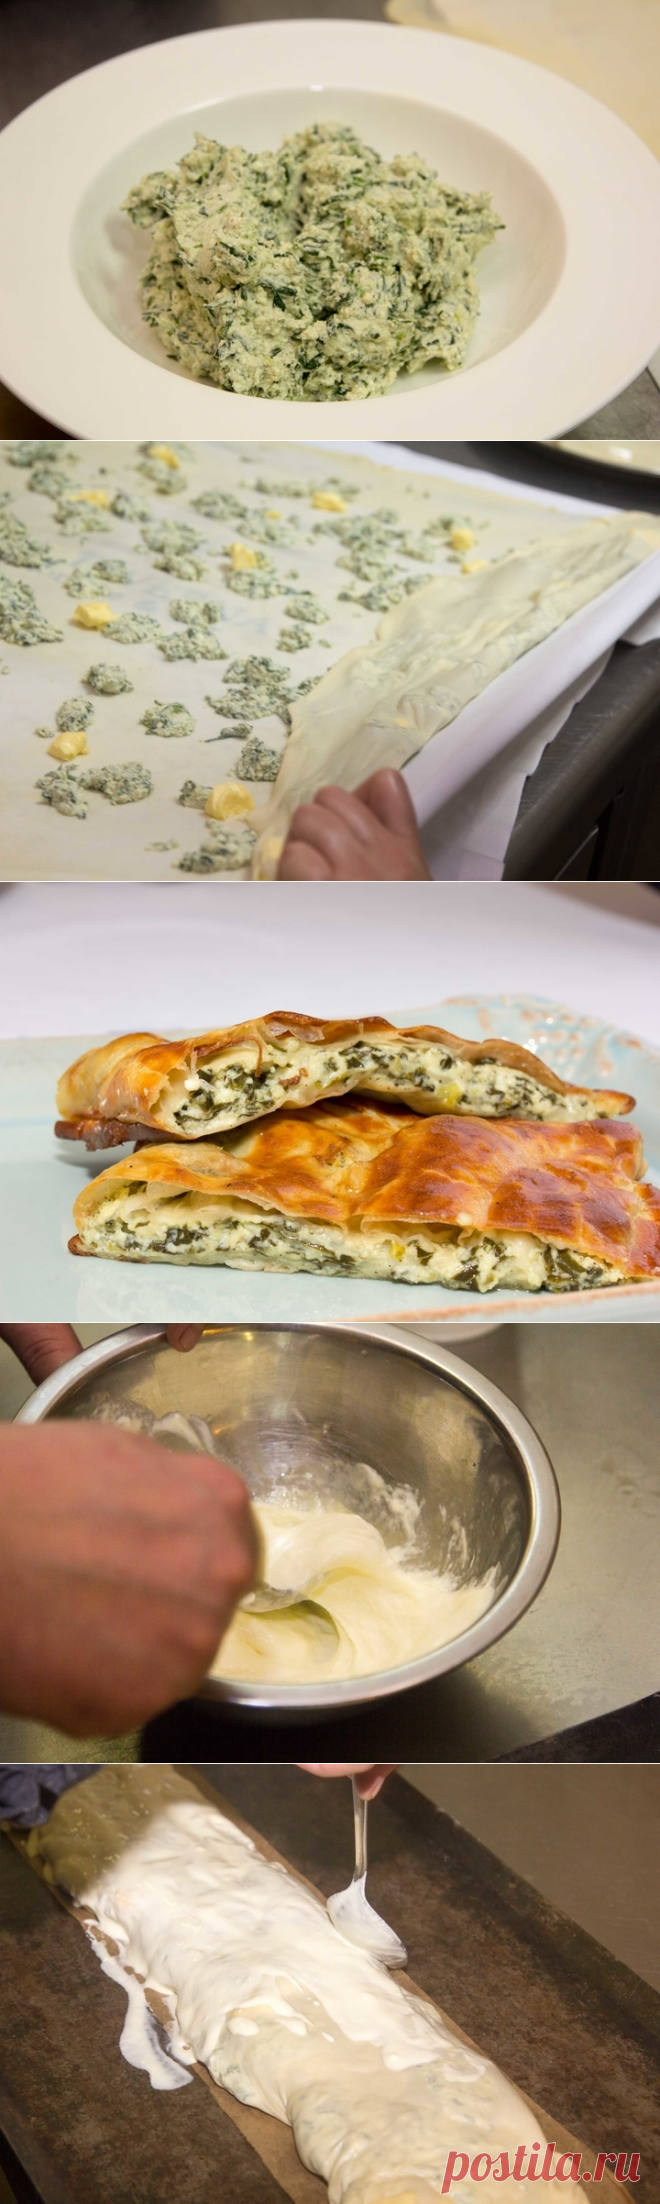 Слоеные пирожки с творожным сыром - рецепт - как приготовить - ингредиенты, состав, время приготовления